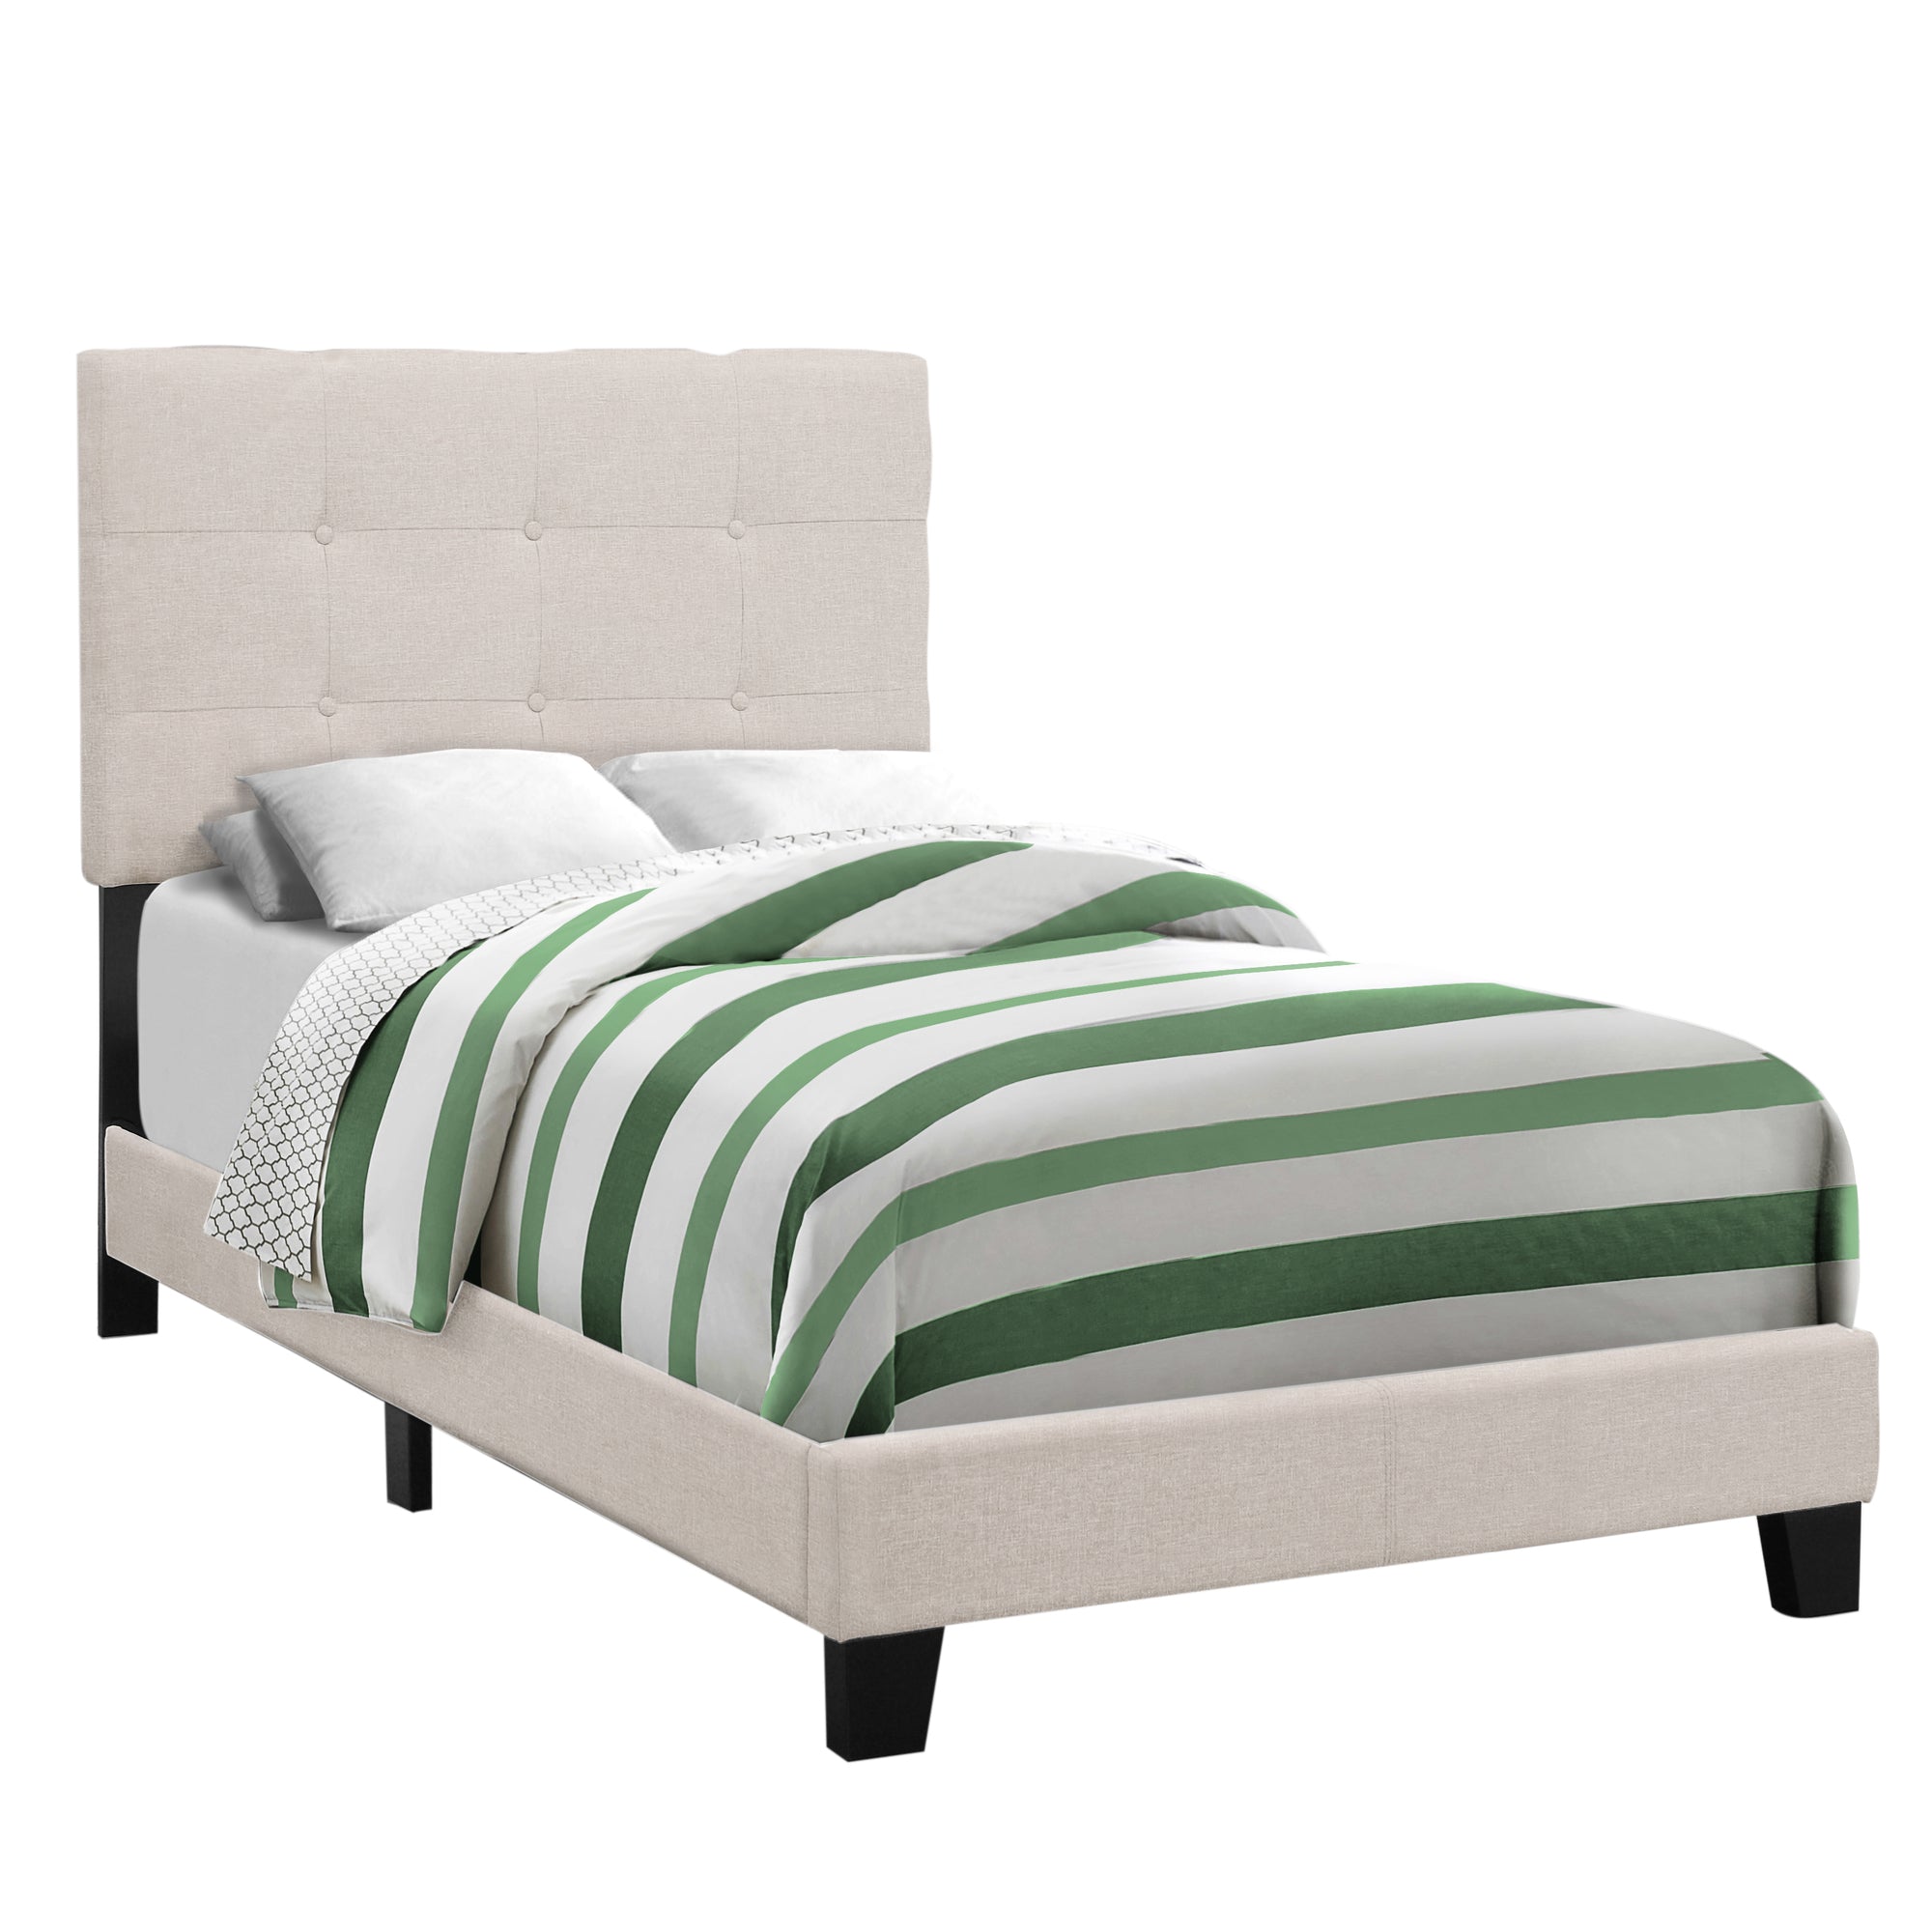 Bed - Twin Size / Beige Linen